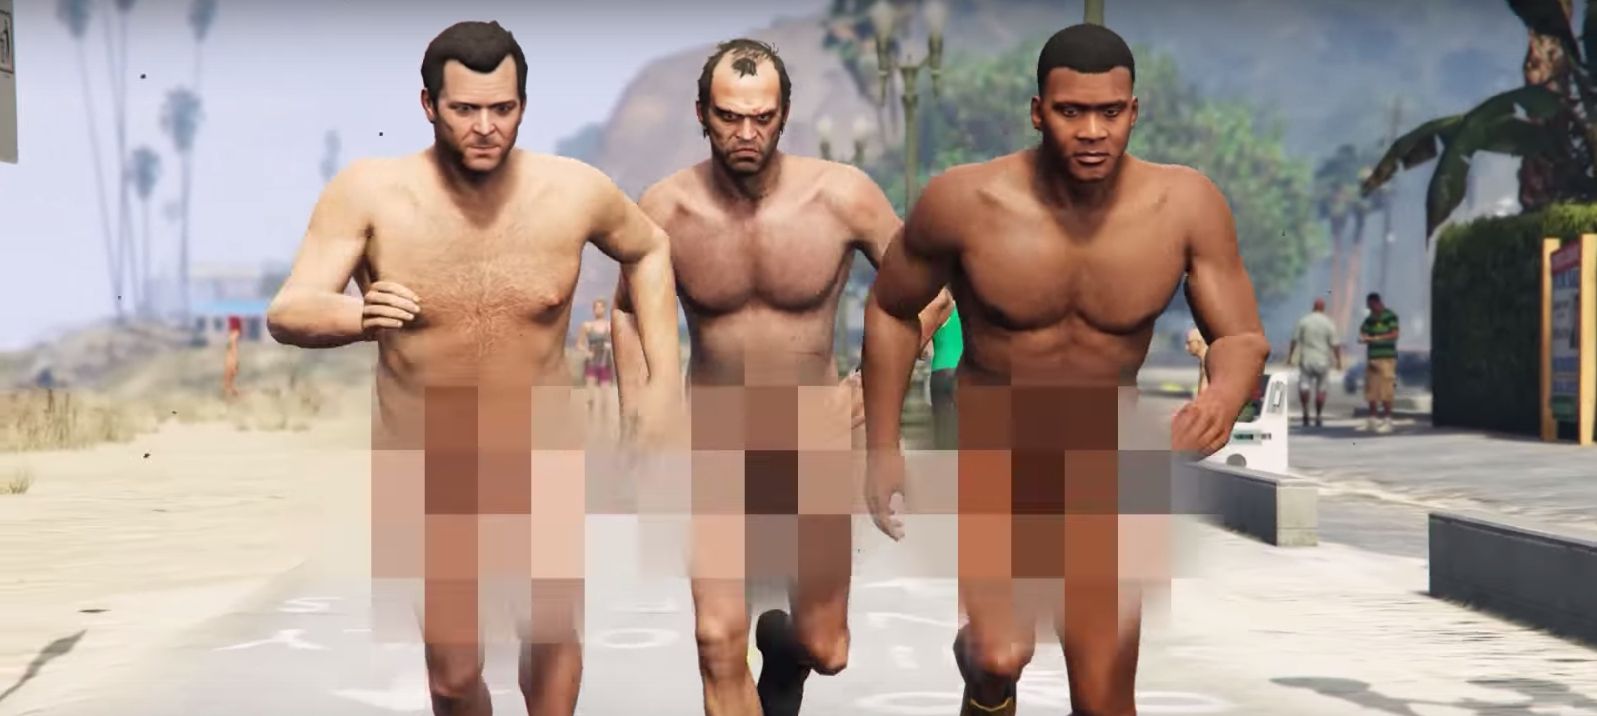 GTA 5 stars get naked for Blink 182 video image